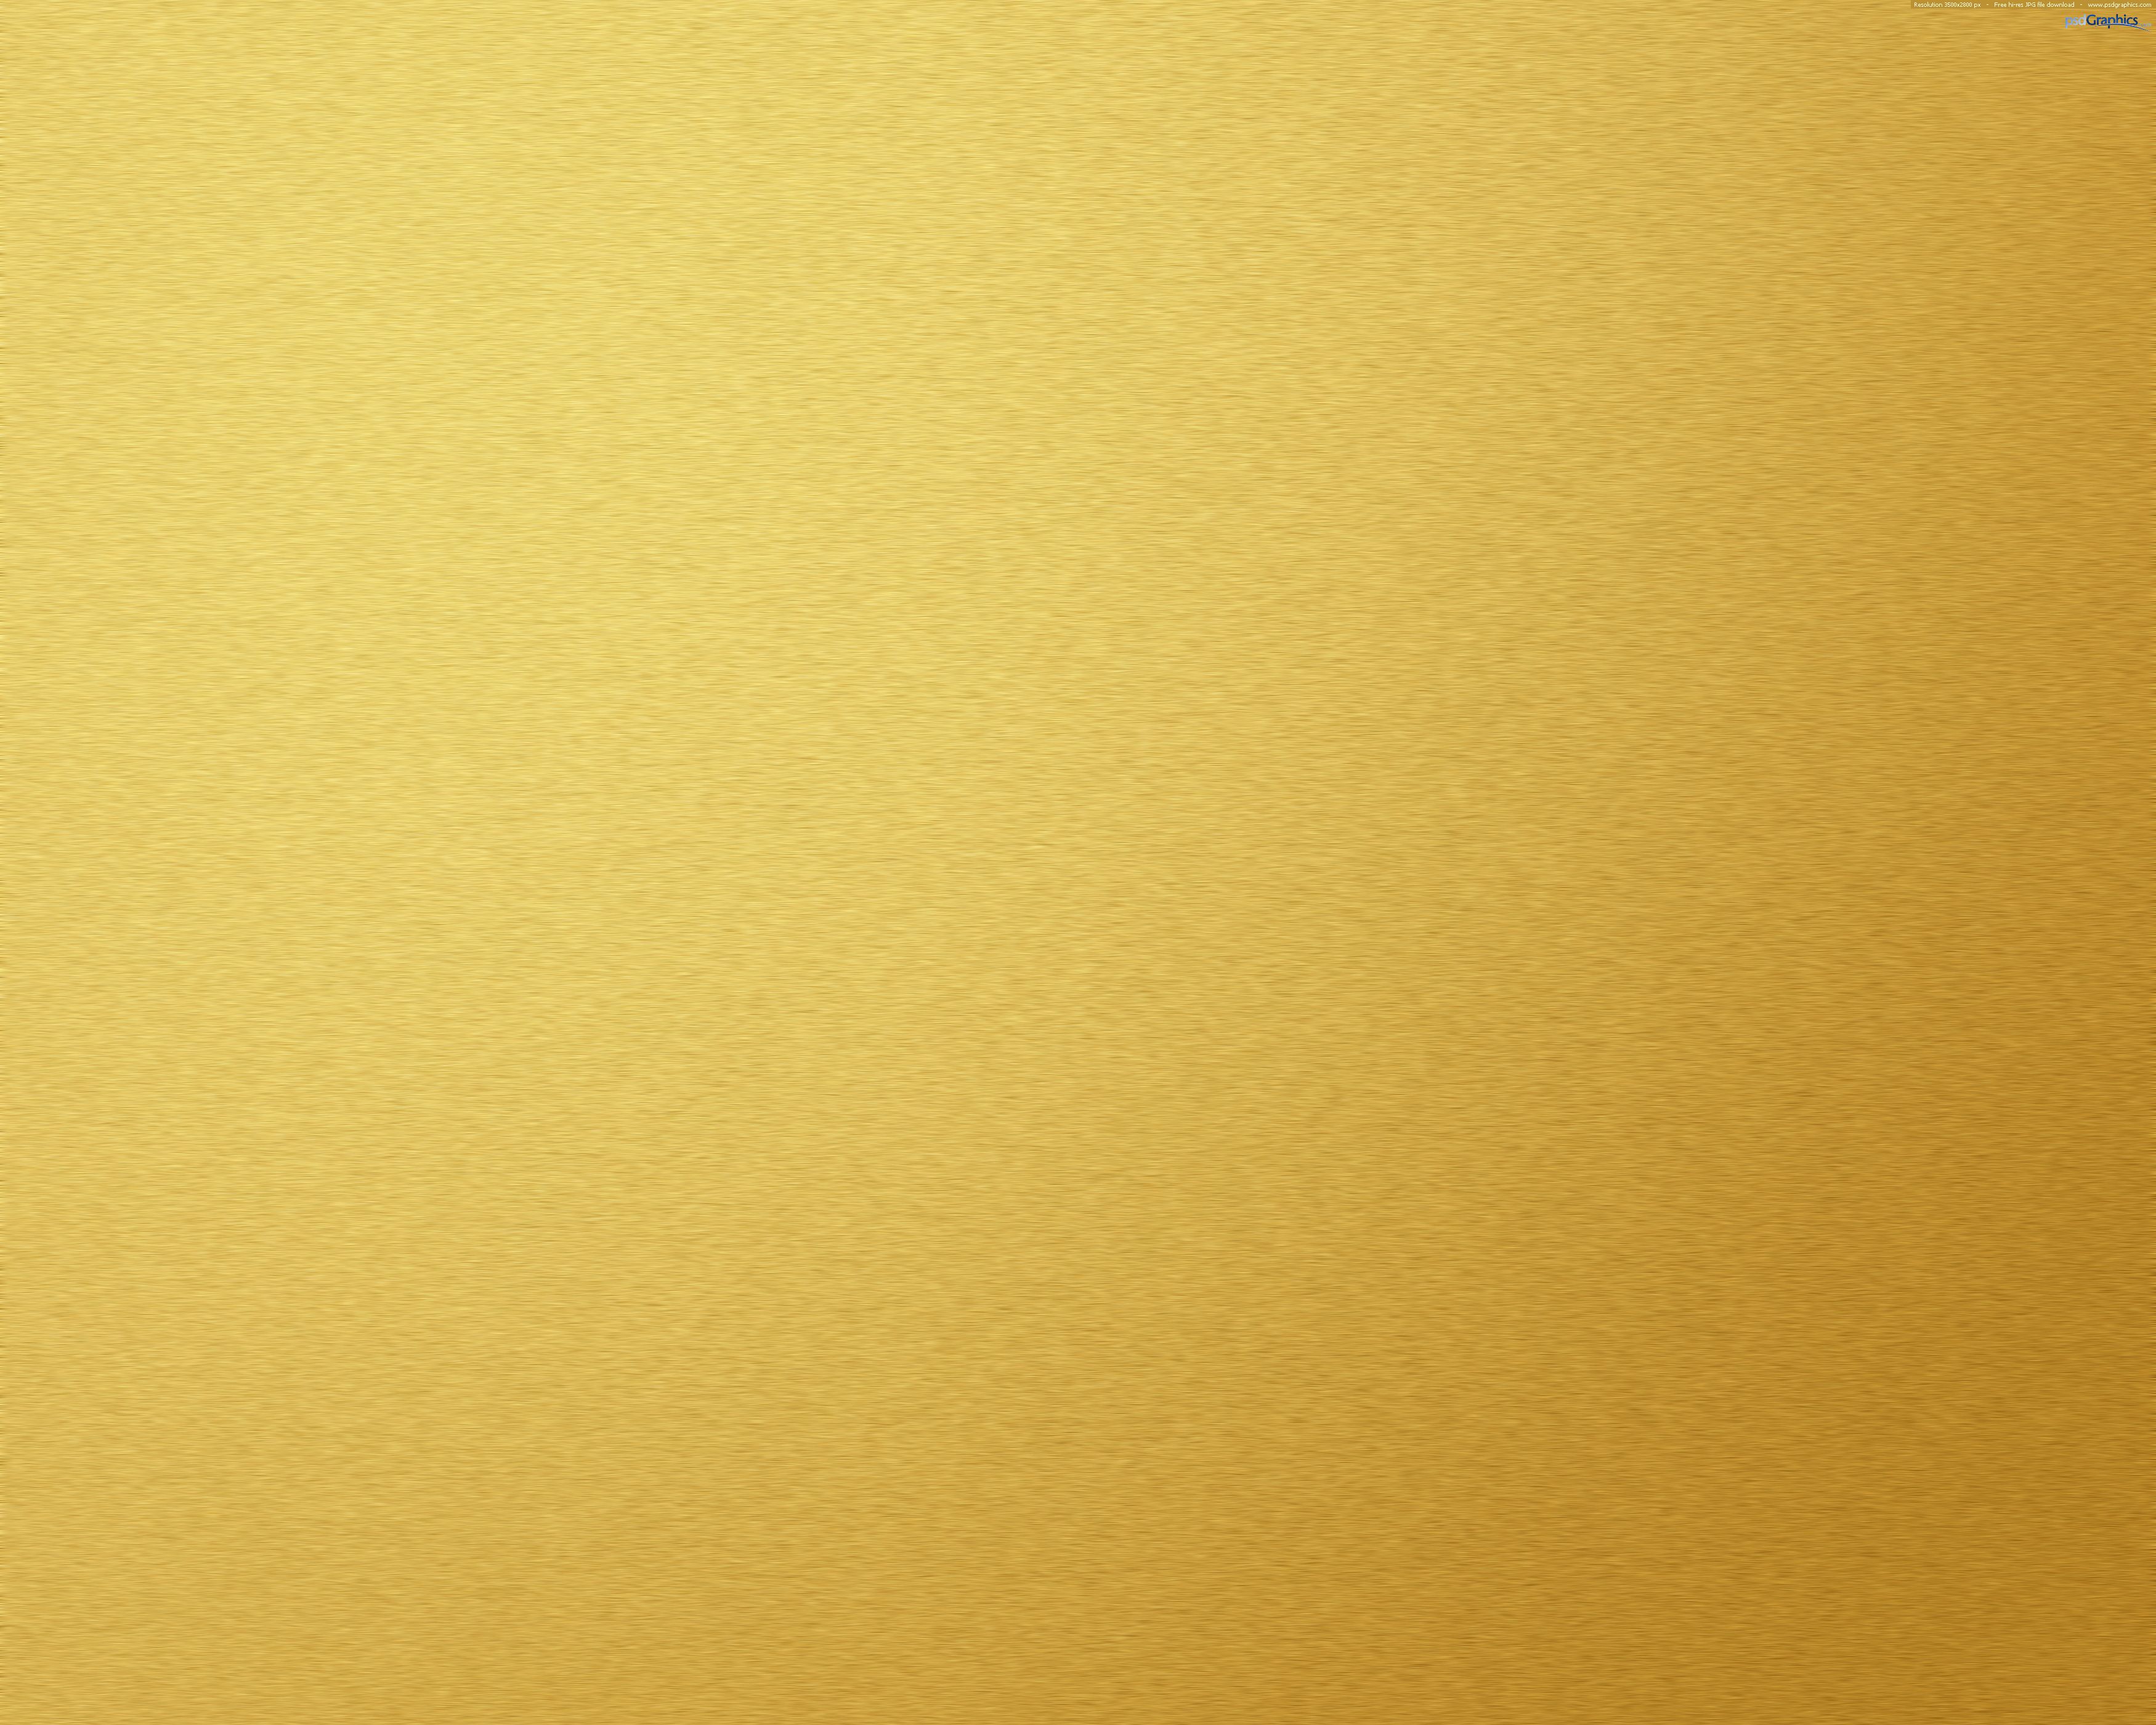 Текстура золота блендер